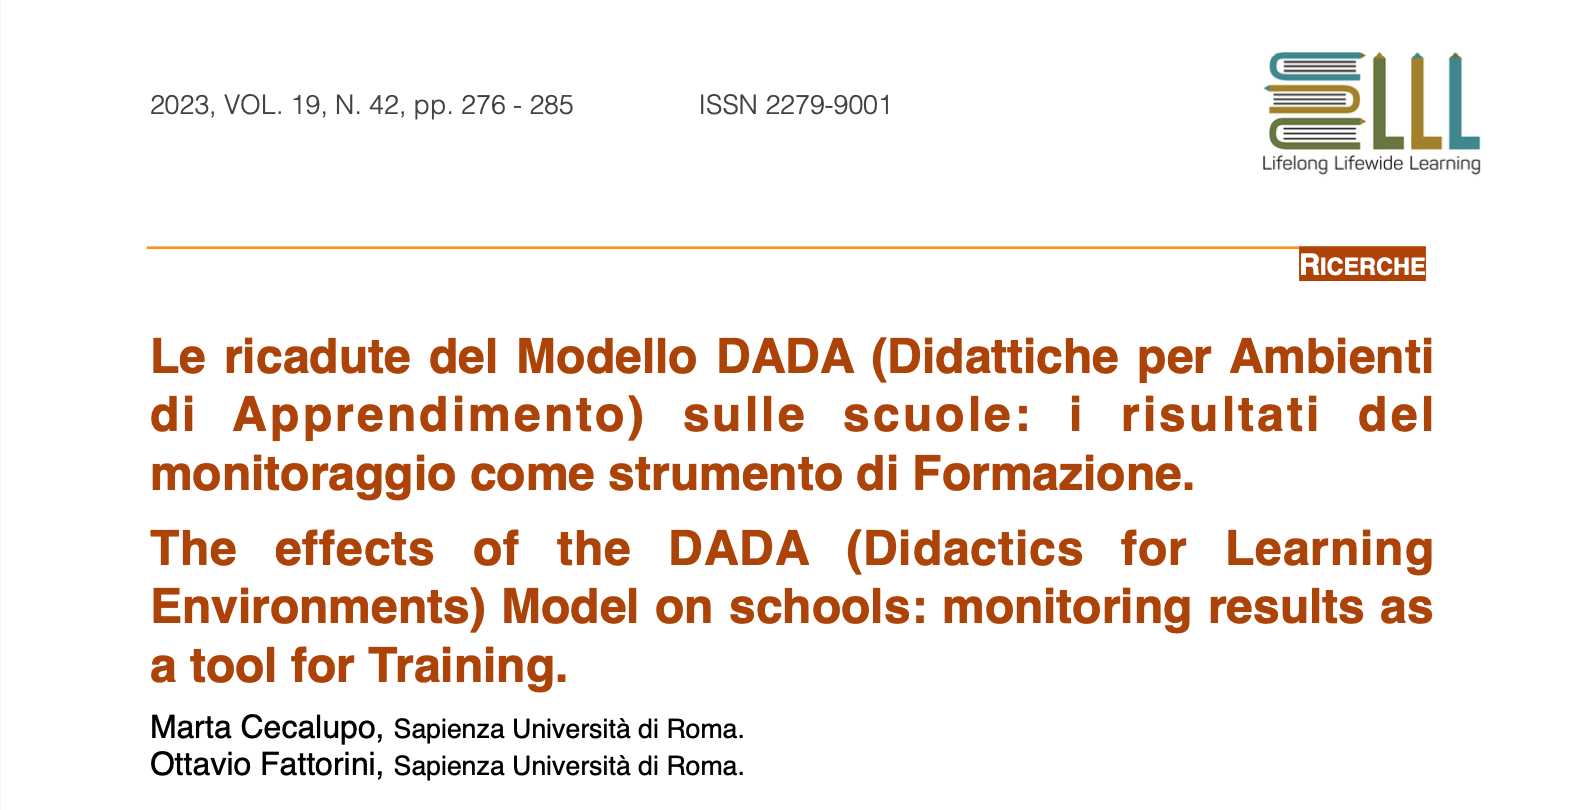 Edaforum: «Le ricadute del Modello DADA sulle scuole: i risultati del monitoraggio come strumento di formazione»